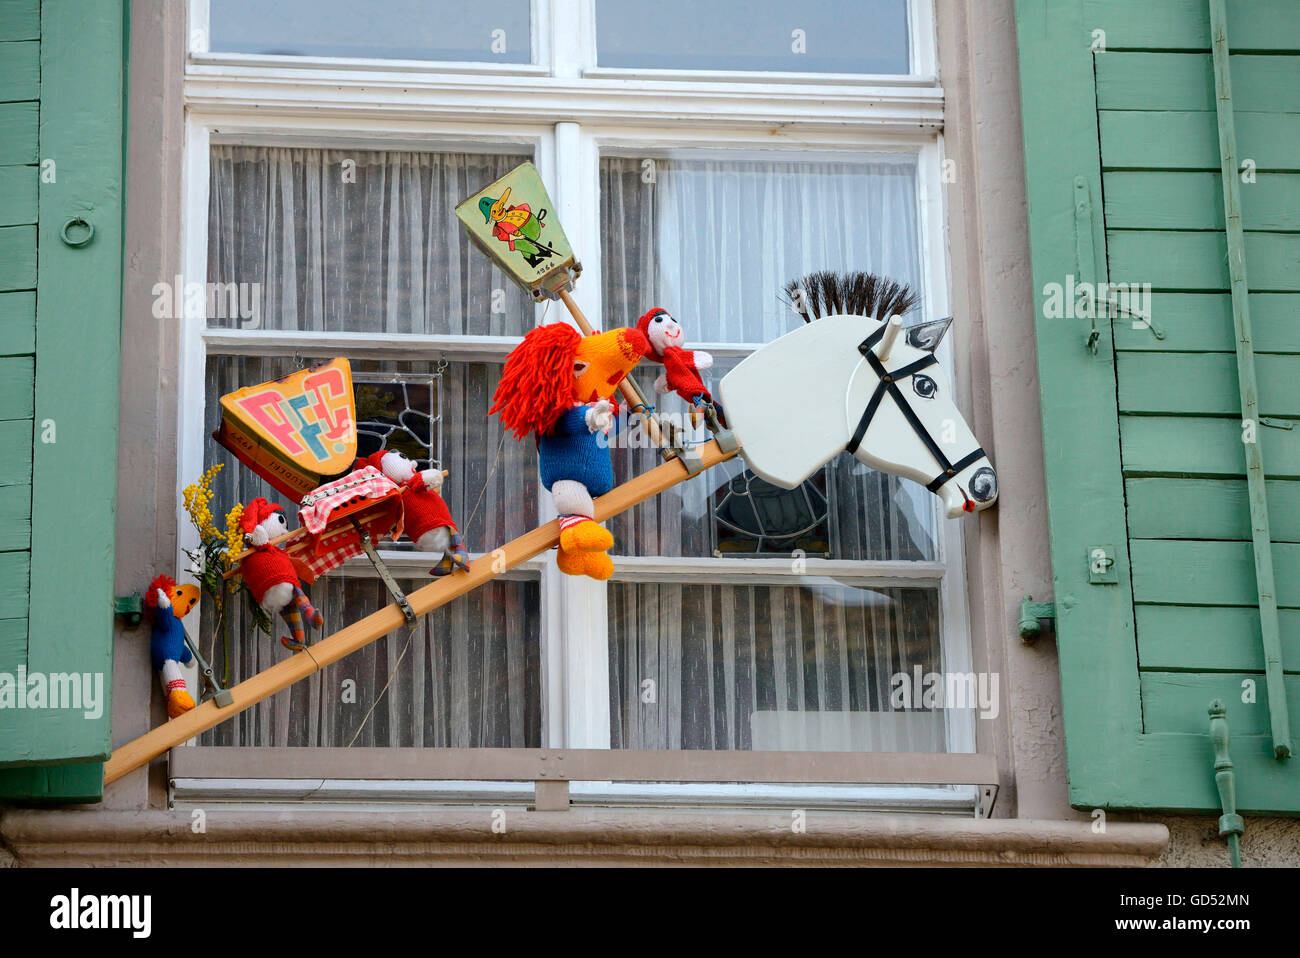 Carnaval de Bâle, décoration à fenêtre, Bâle, Suisse Banque D'Images